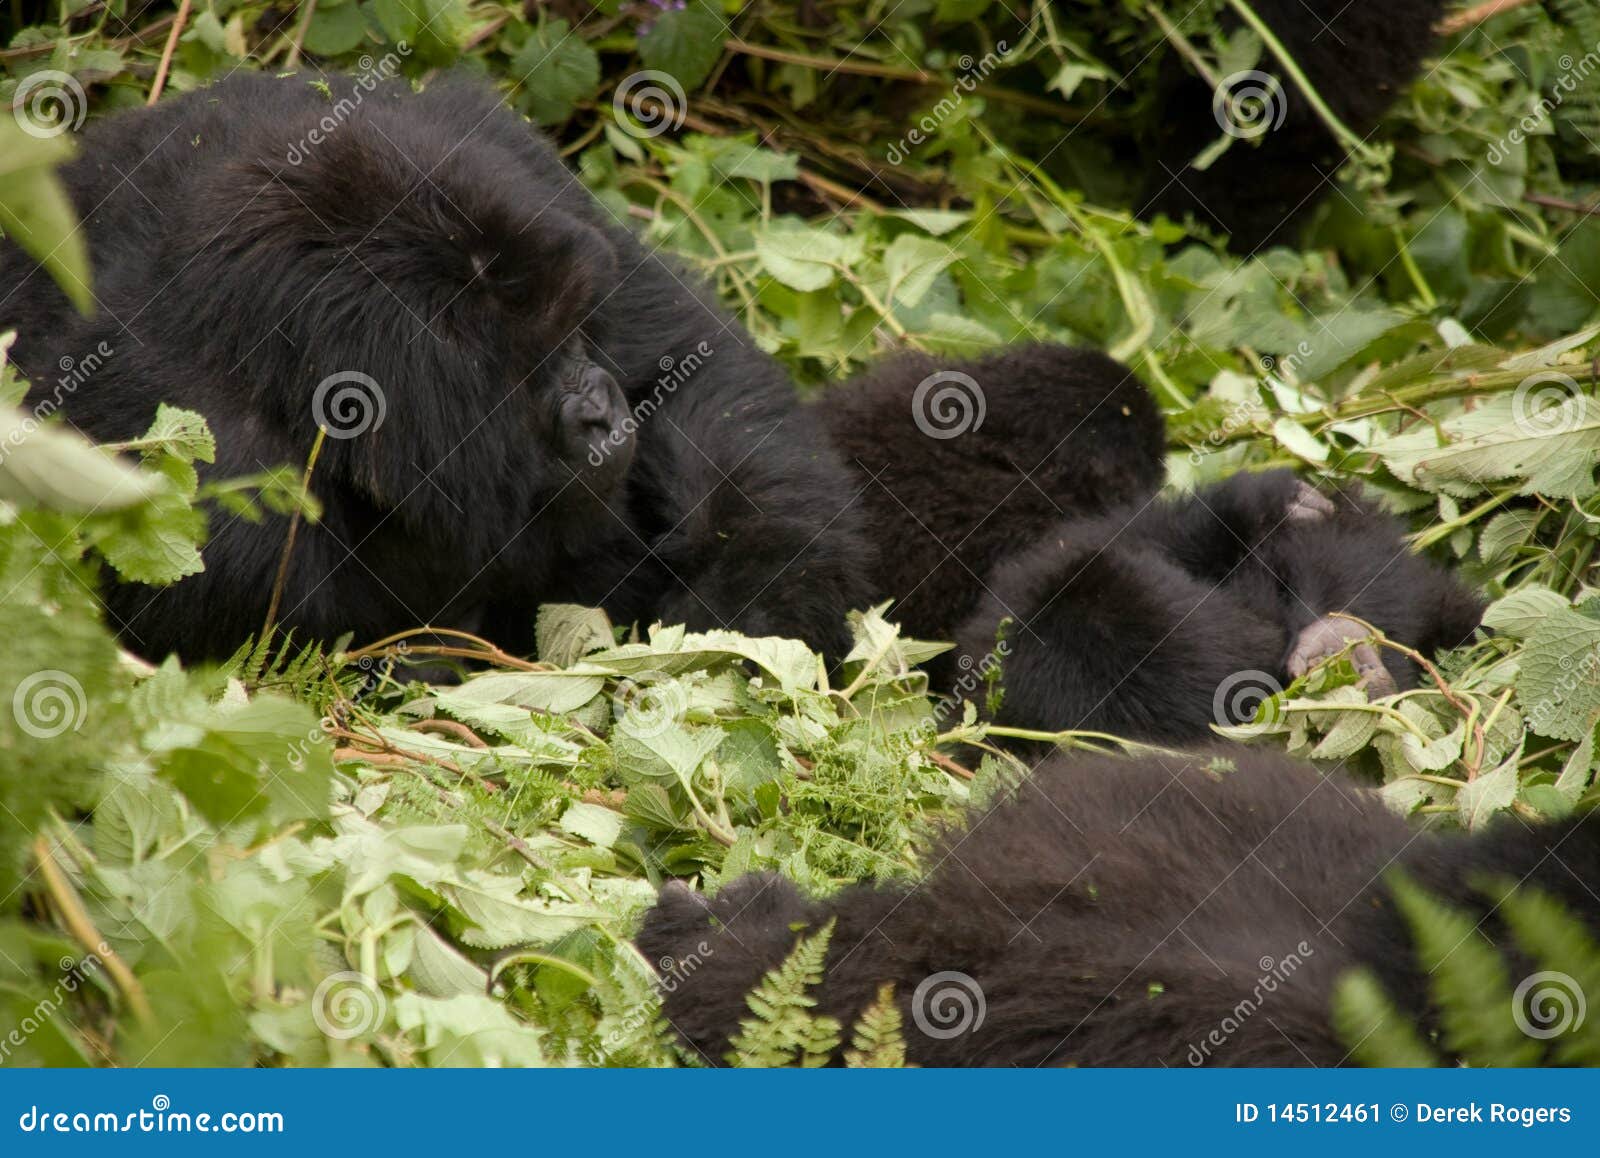 gorilla family in rwanda